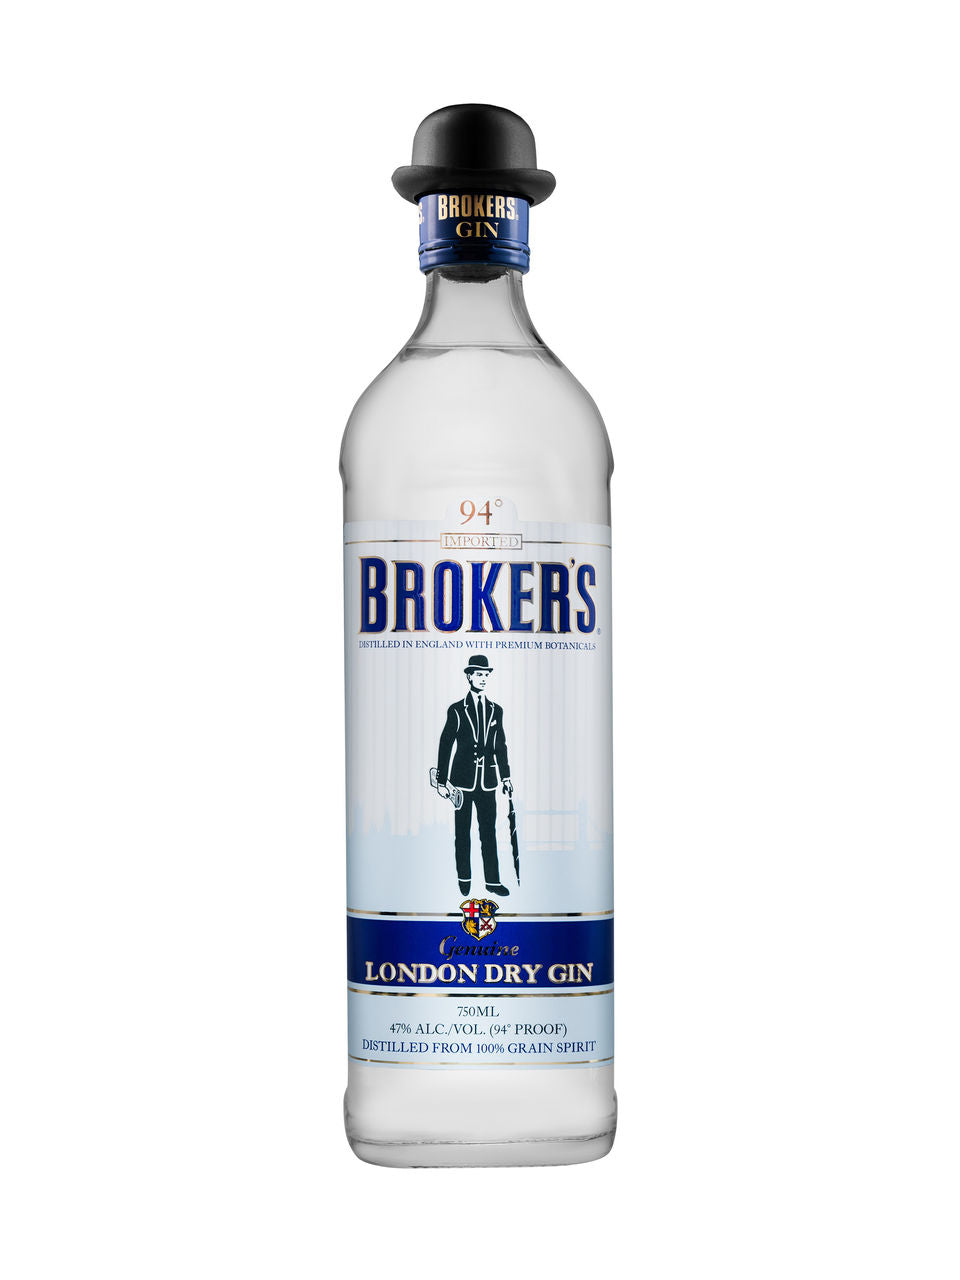 Broker's Premium London Dry Gin 750 mL bottle